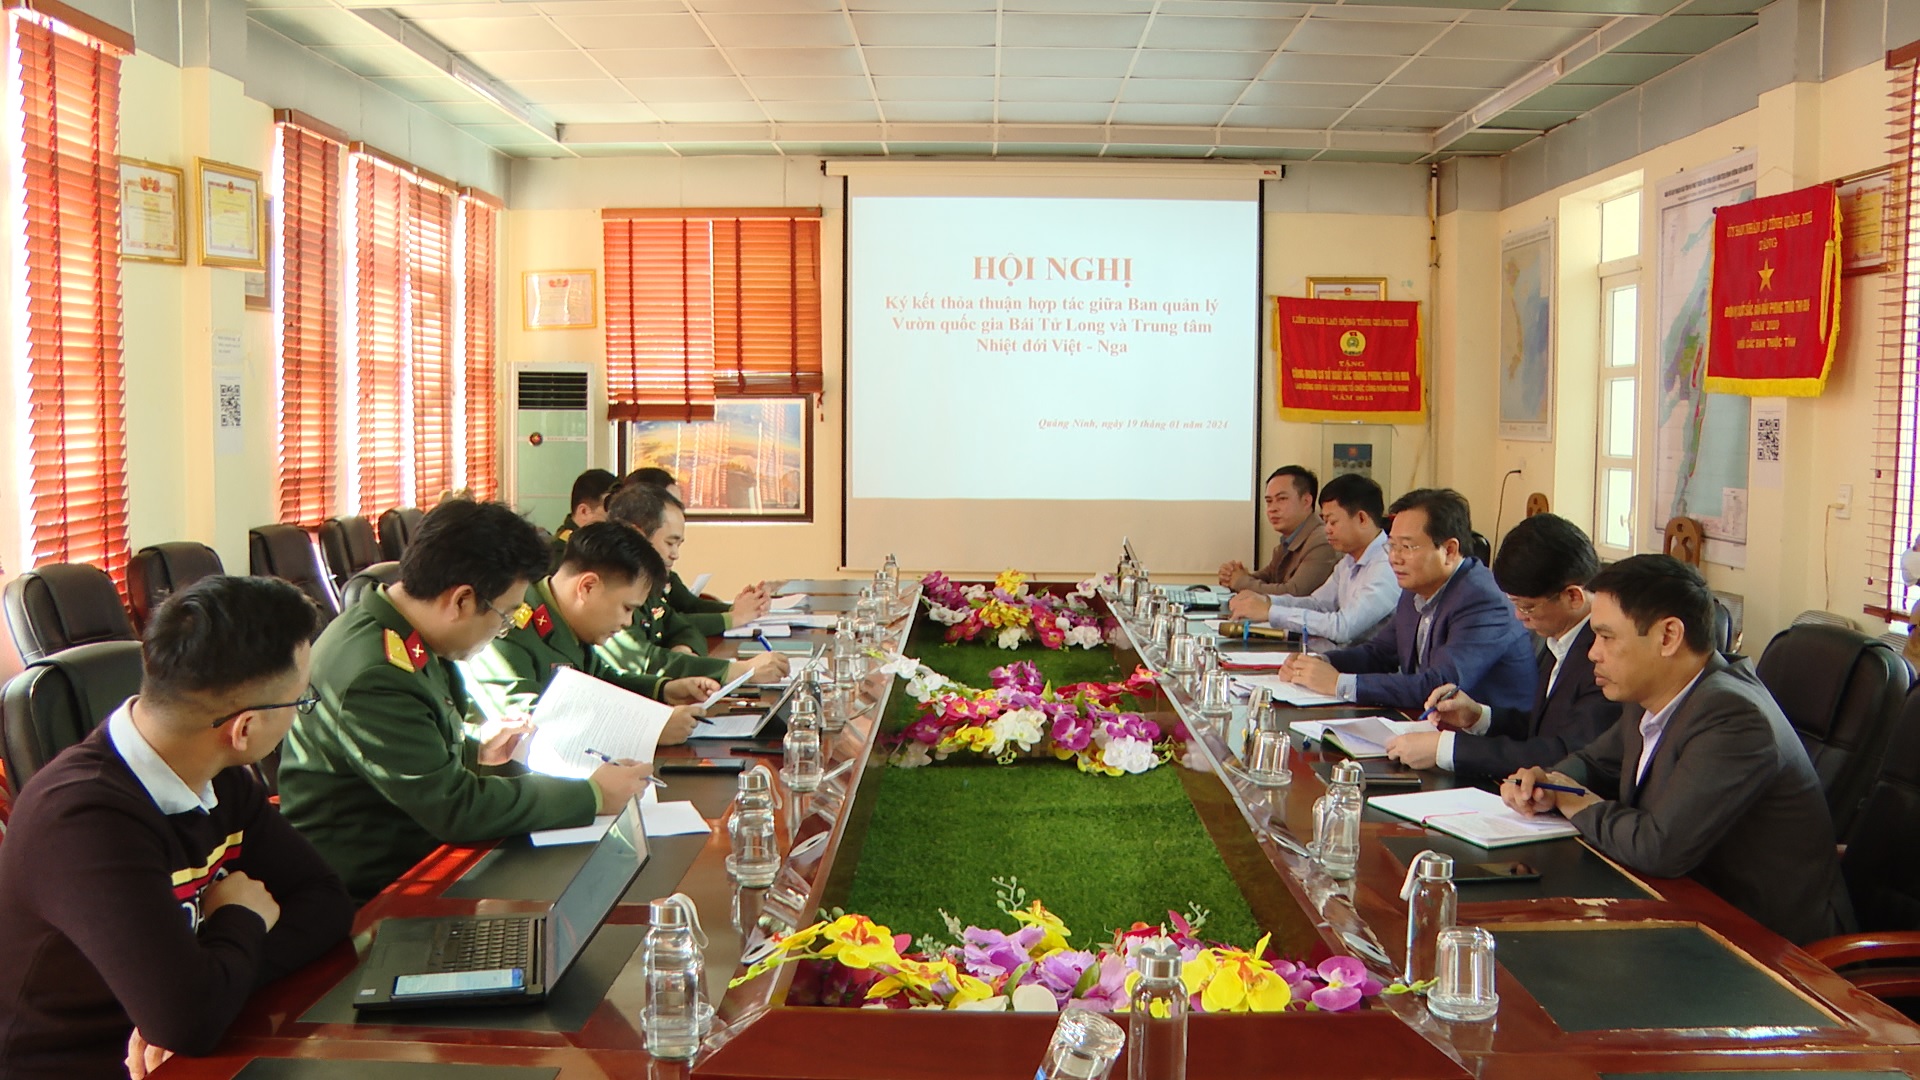 Trung tâm Nhiệt đới Việt - Nga và Ban Quản lý Vườn Quốc gia Bái Tử Long ký kết thỏa thuận hợp tác